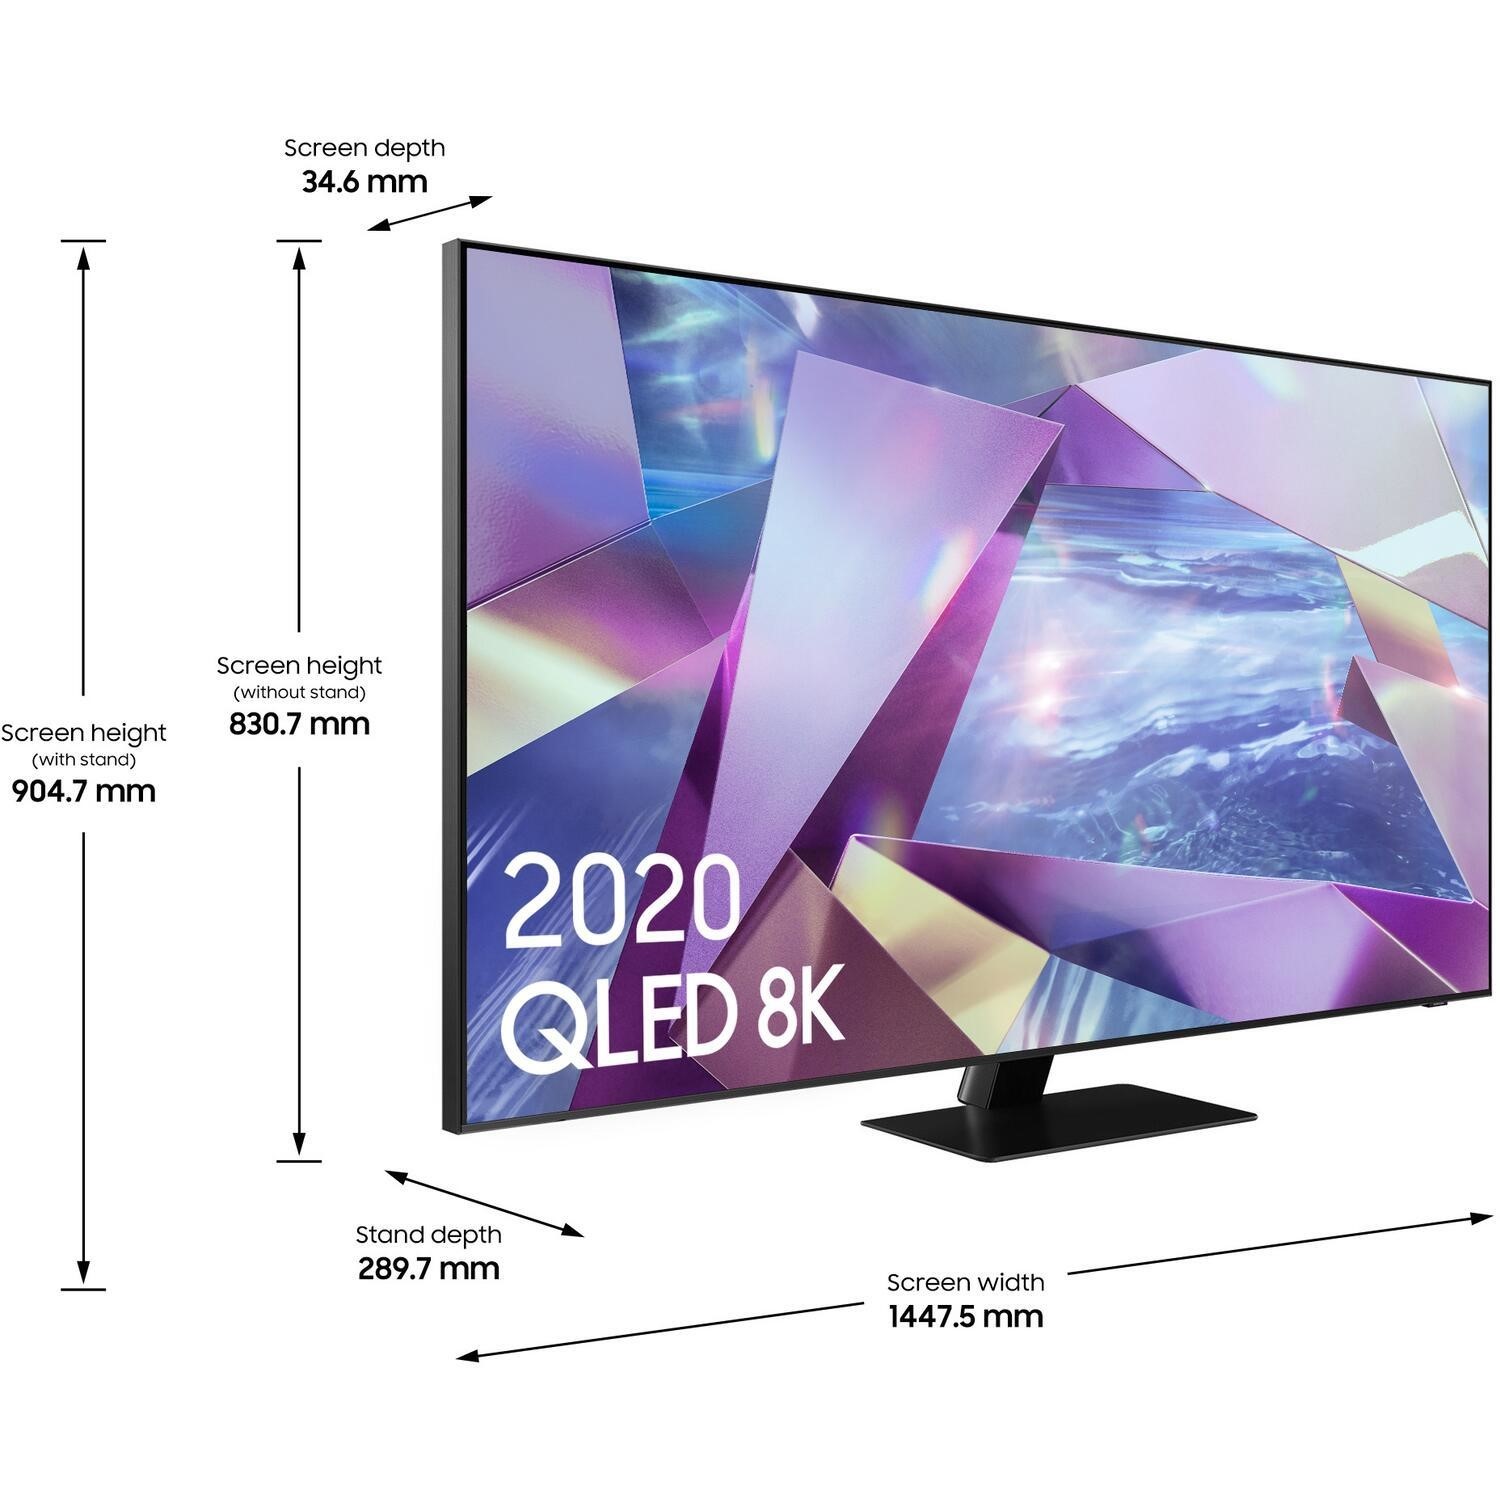 Samsung Q60 65 inch QLED 4K HDR Smart TV - Laptops Direct